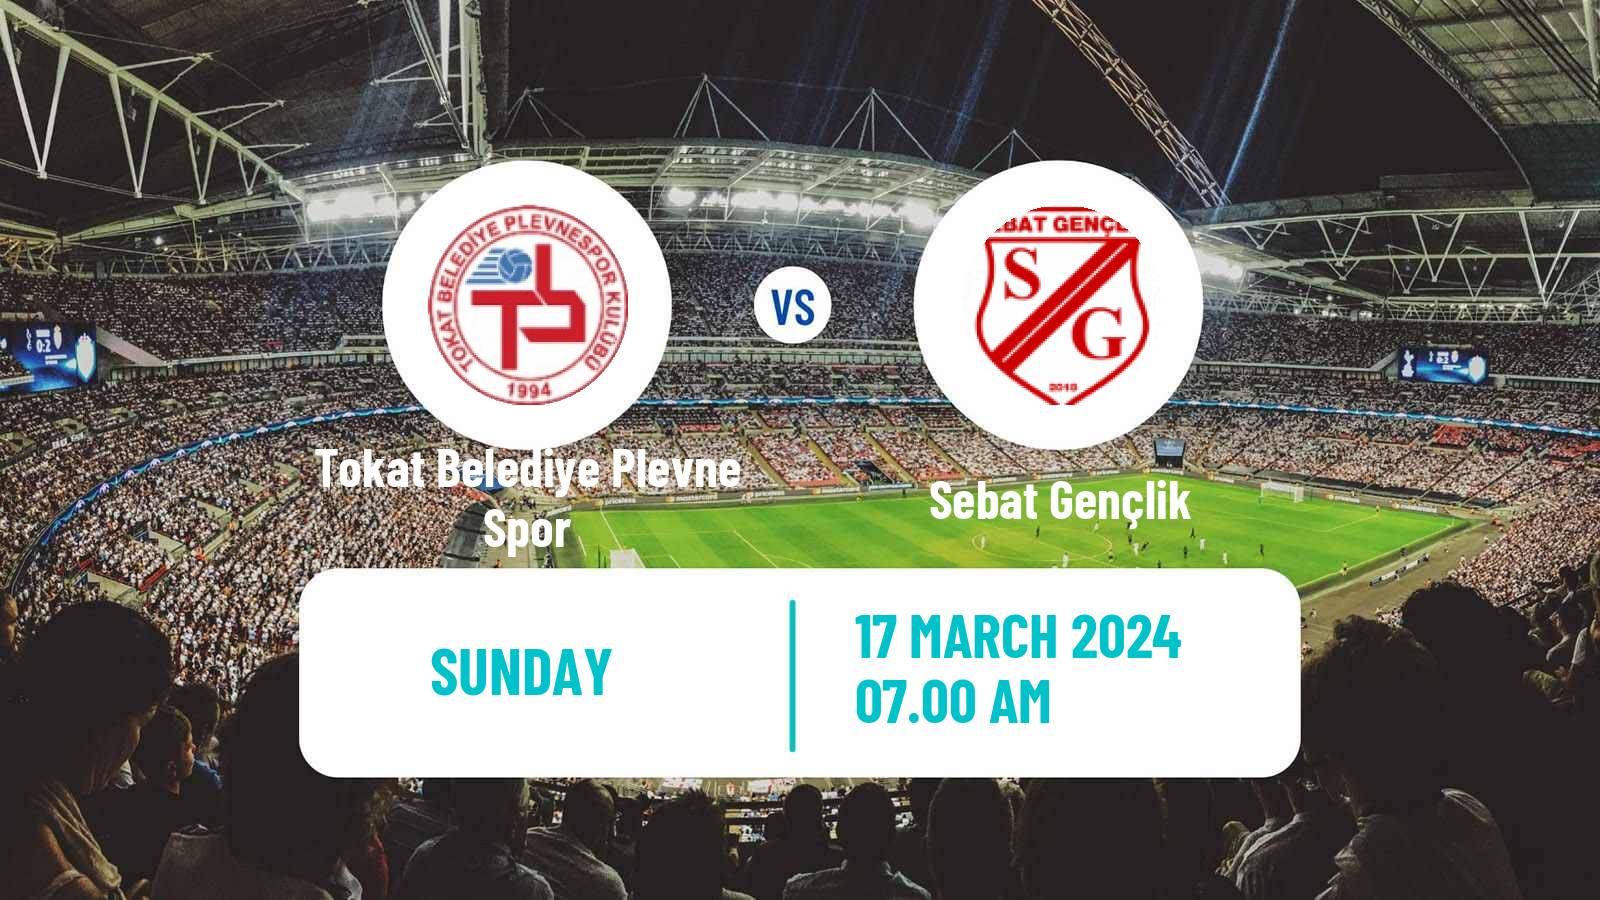 Soccer Turkish 3 Lig Group 4 Tokat Belediye Plevne Spor - Sebat Gençlik